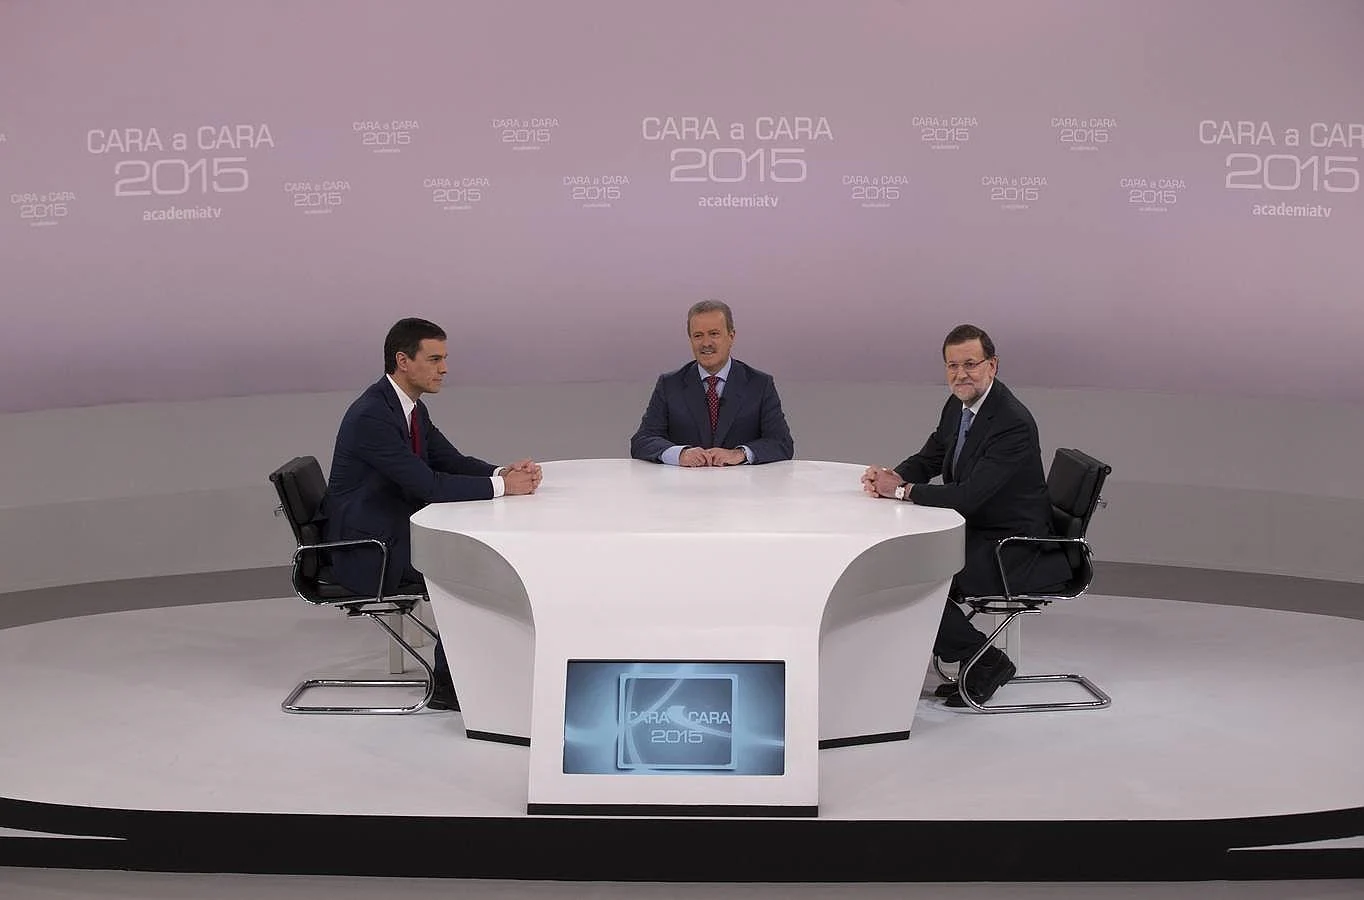 Los candidatos Sánchez y Rajoy, junto al moderador del Cara a Cara, Manuel Campo Vidal, antes de empezar el debate